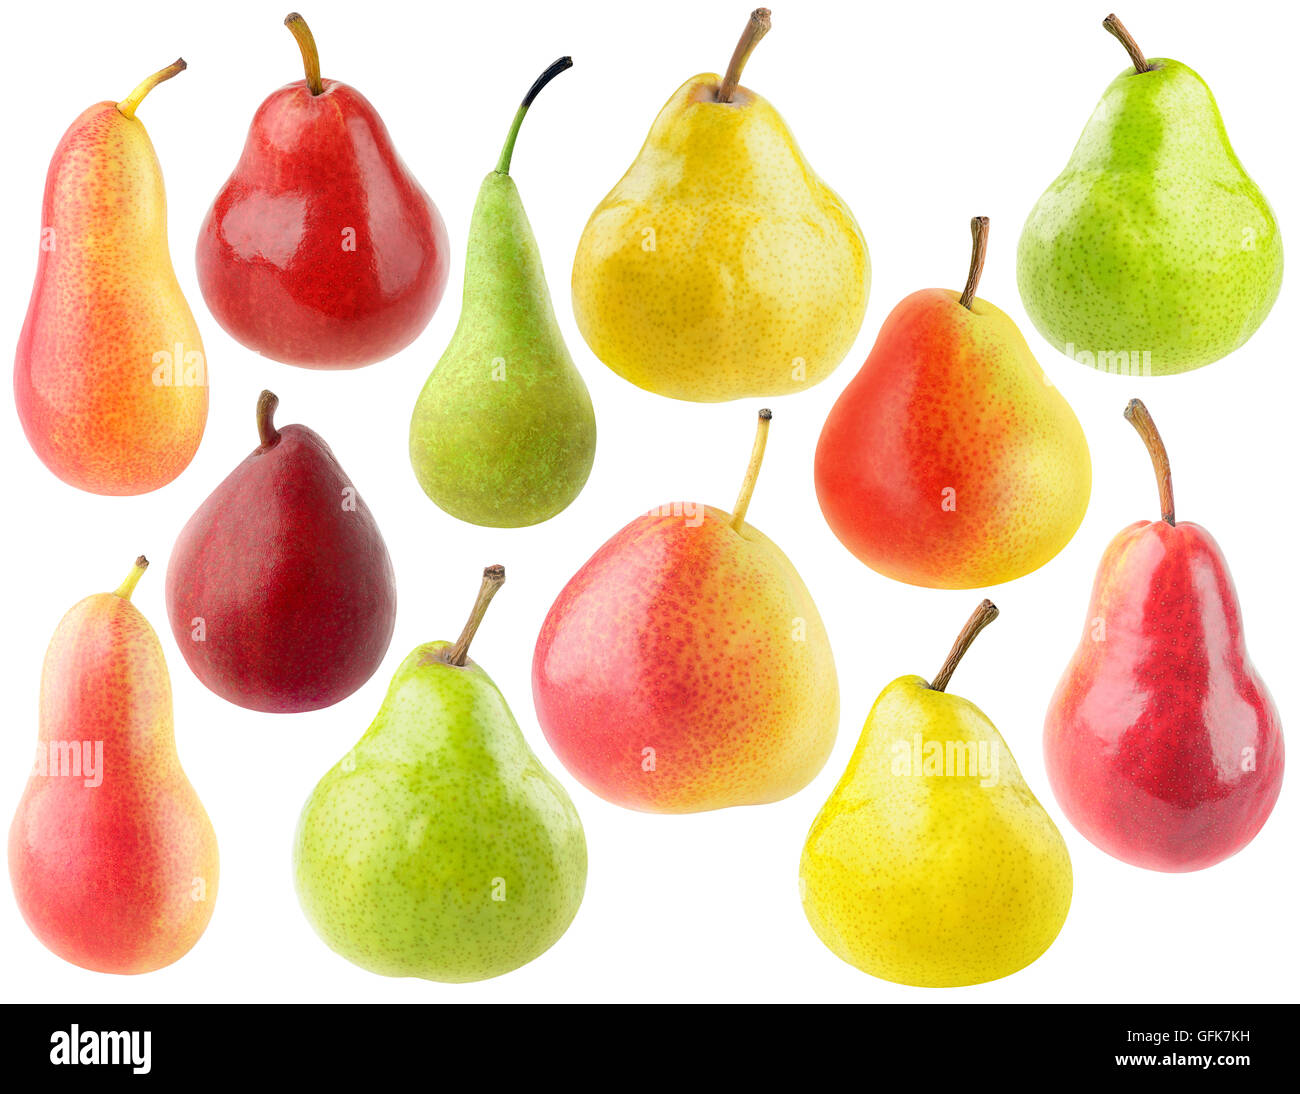 Poires isolés. Collection de divers fruits poire isolé sur fond blanc avec clipping path Banque D'Images